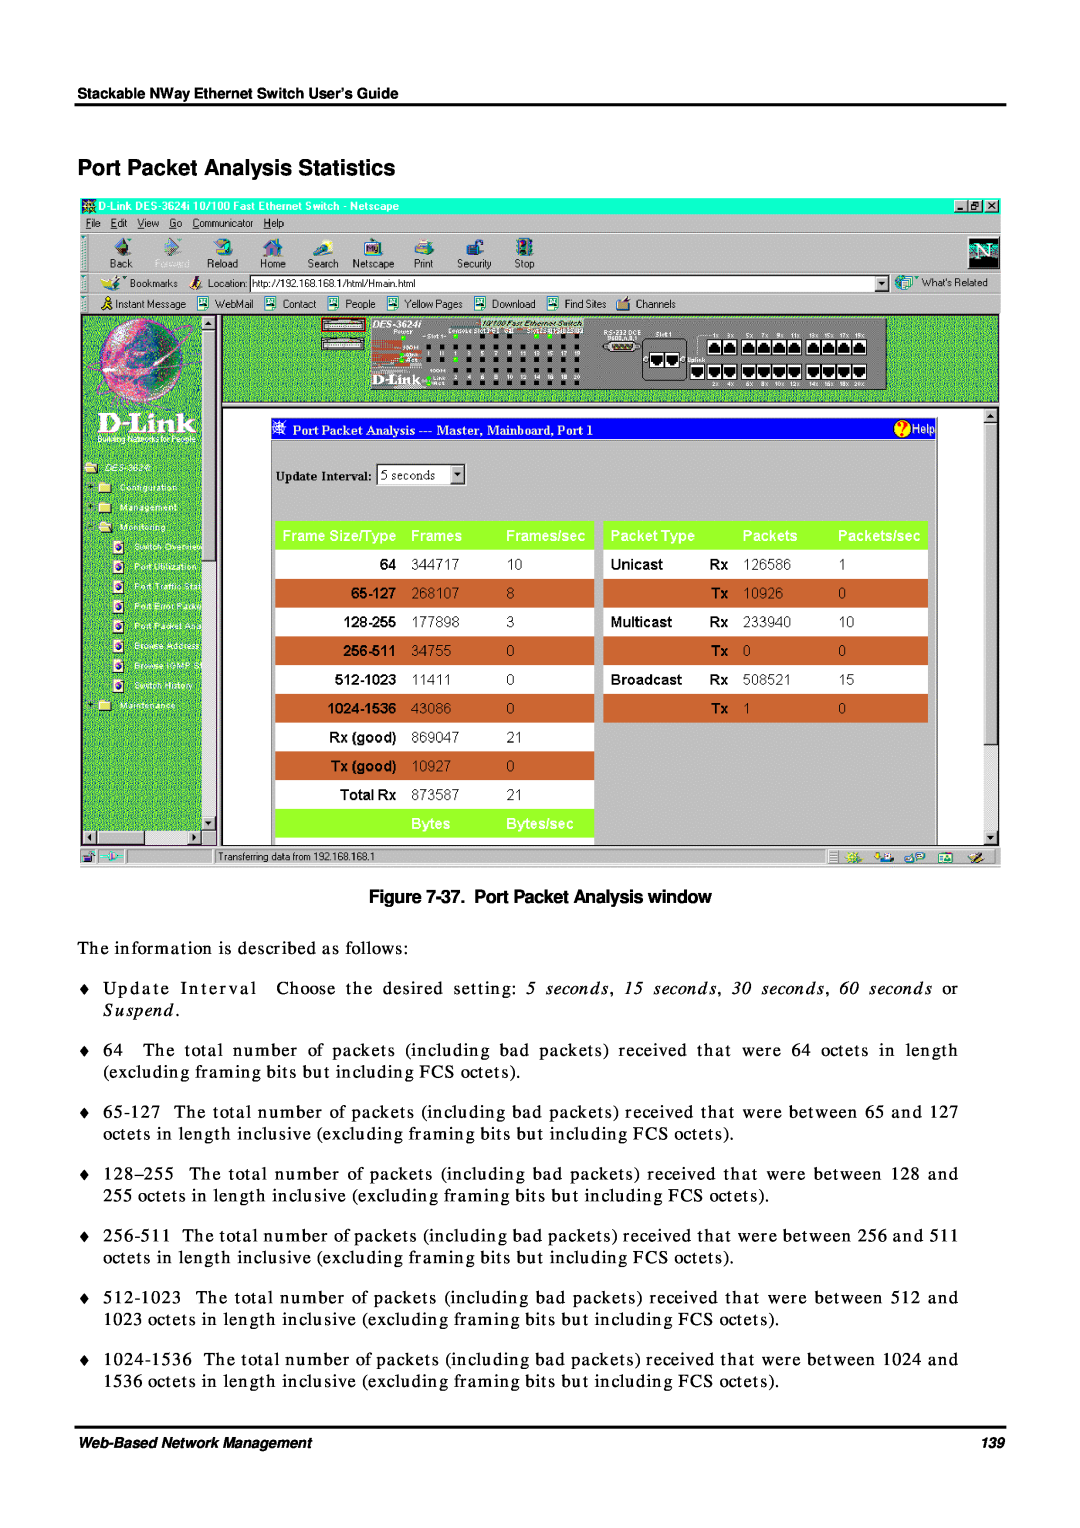 D-Link DES-3624 manual Port Packet Analysis Statistics, 37. Port Packet Analysis window 